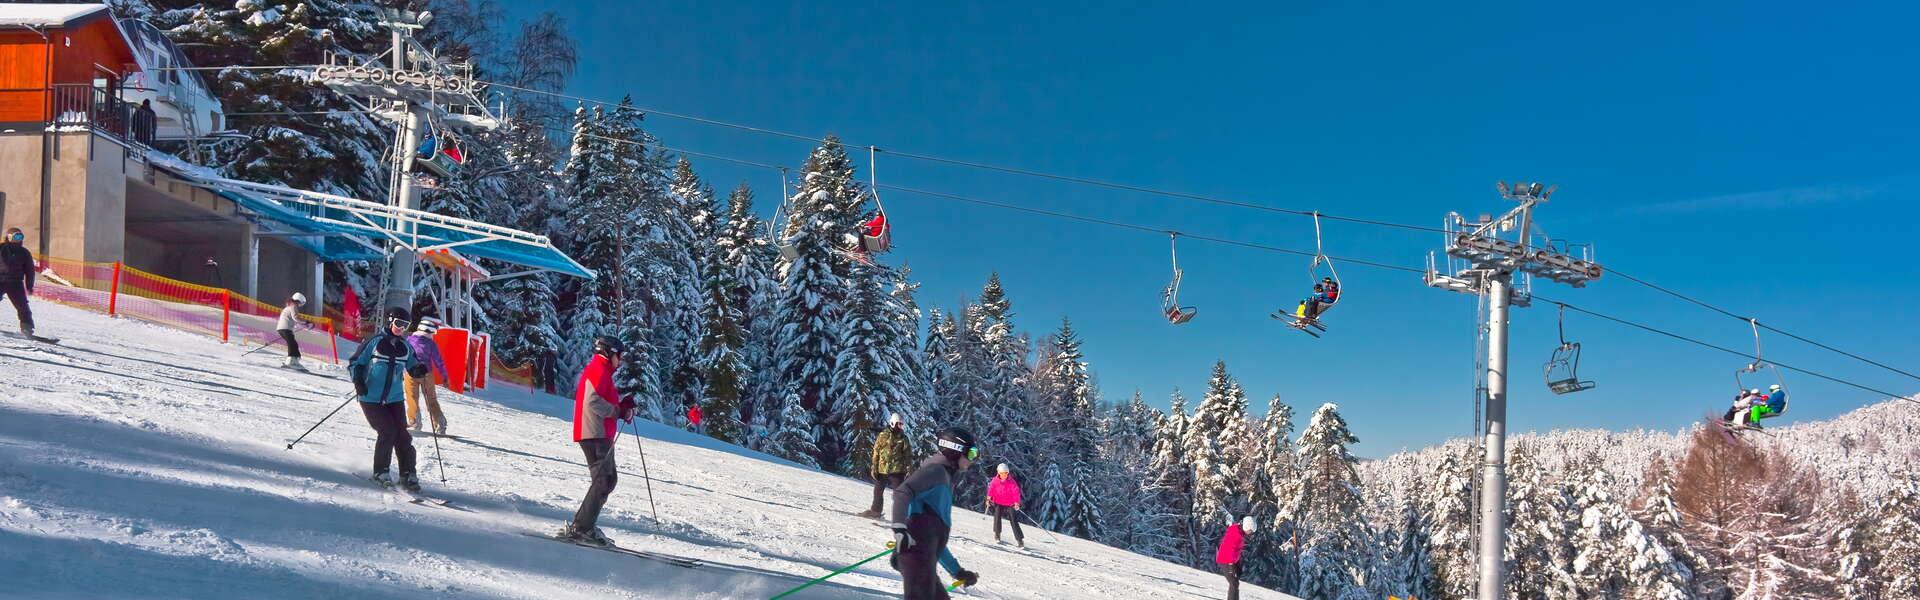 Immagine: Stacje narciarskie w Małopolsce – każdy znajdzie odpowiednią dla siebie